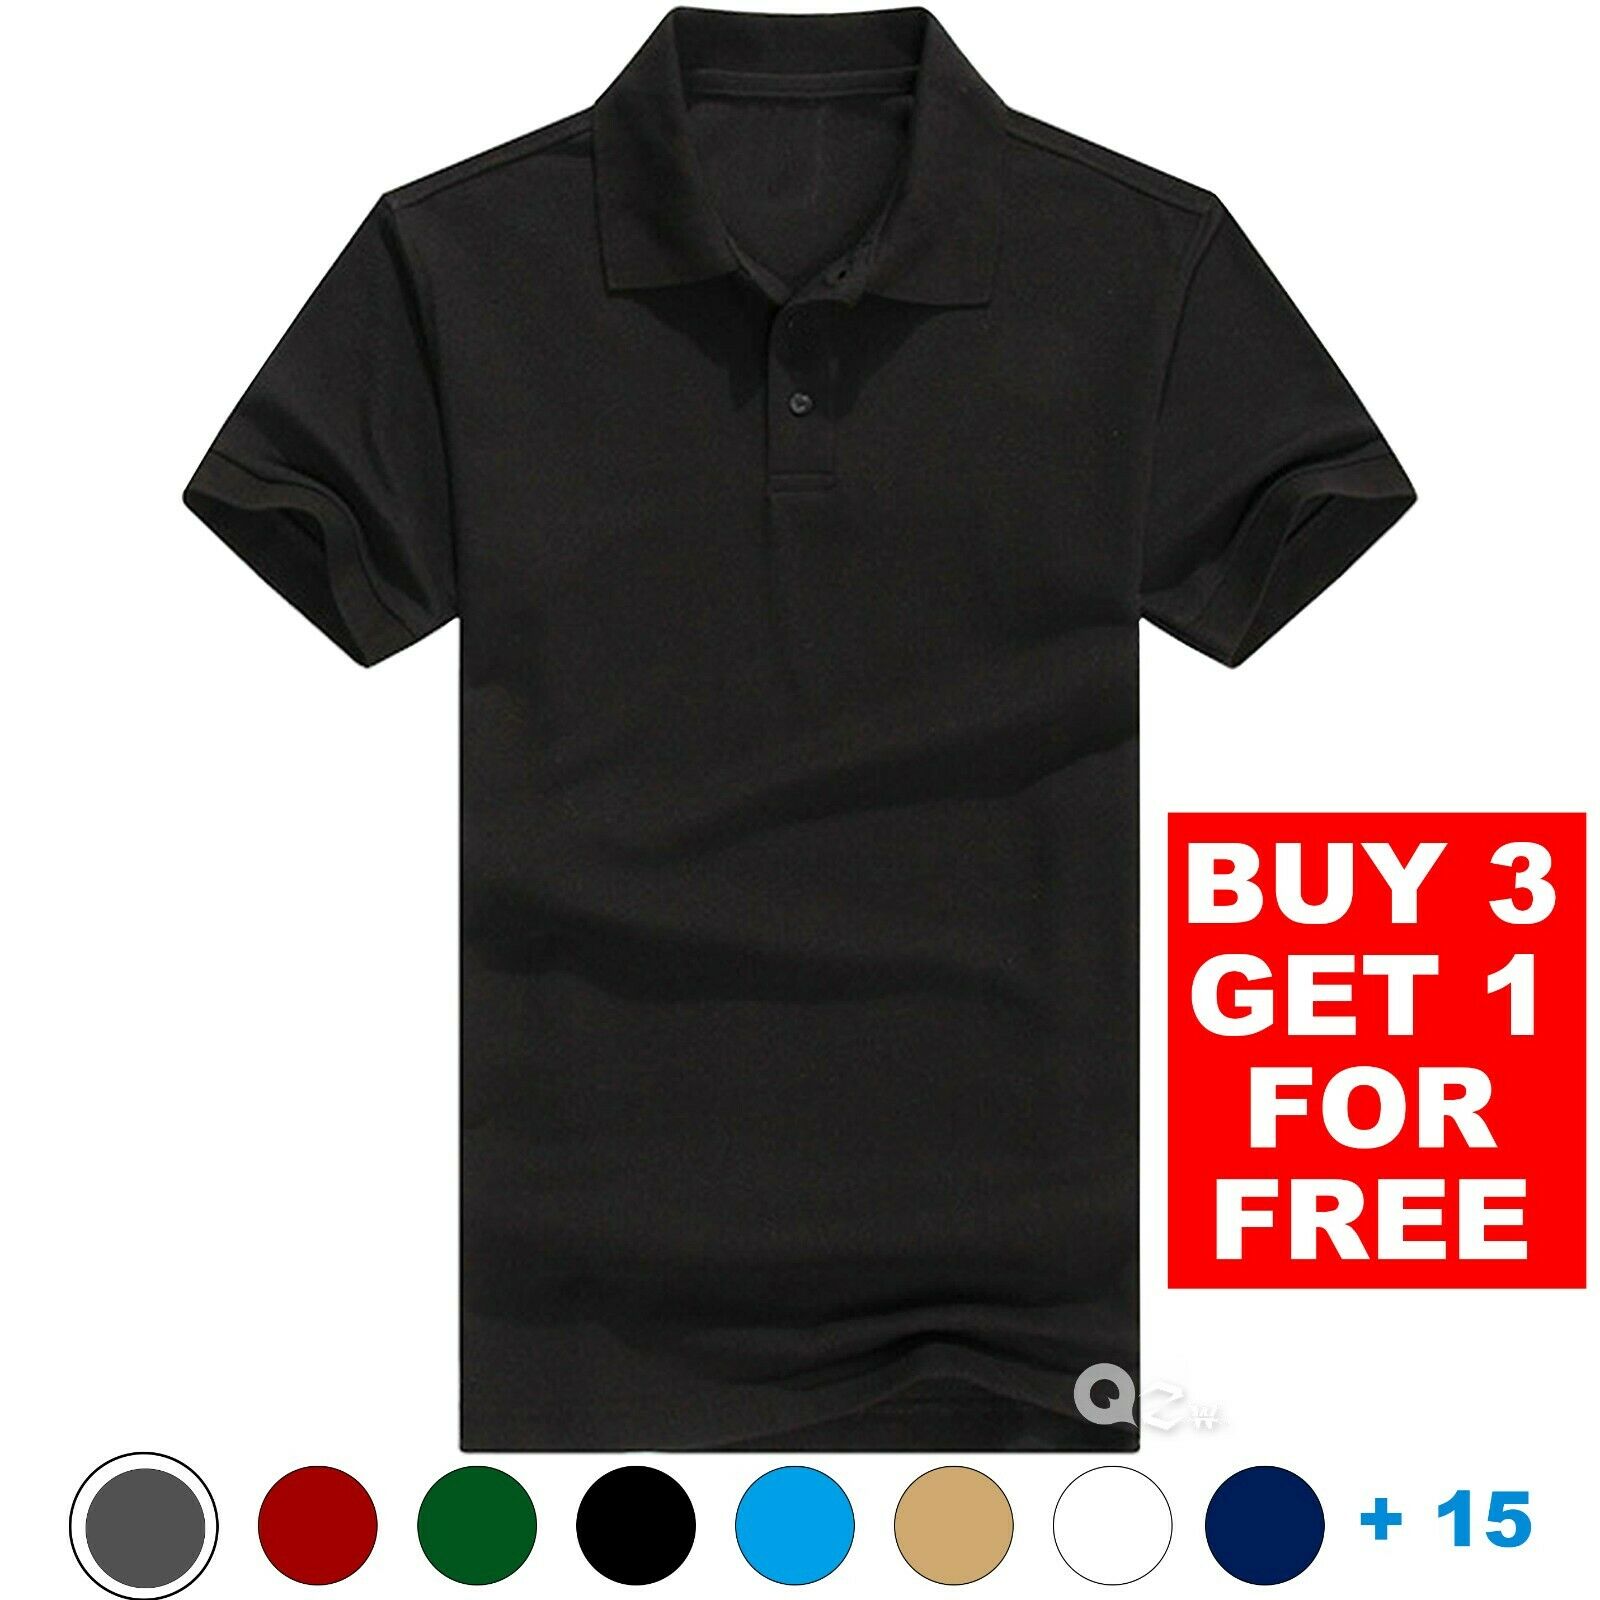 Men's Polo Shirt Golf Sports Cotton Short Sleeve Jersey Casual Plain T Shirt New